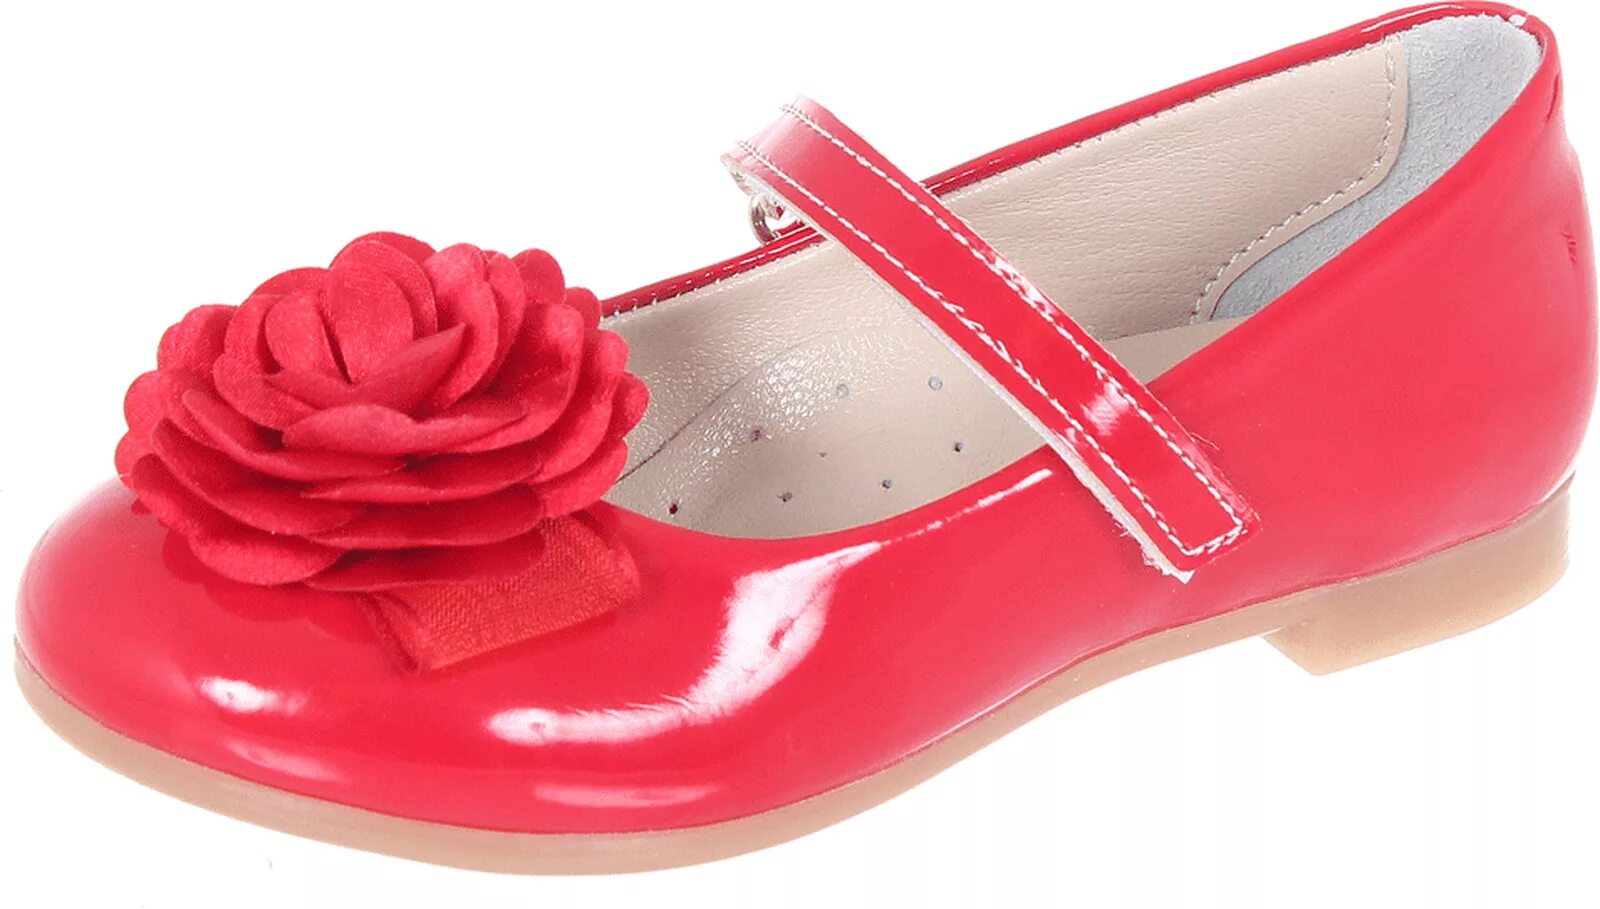 34 размер обувь купить. Туфли для девочек. Красные туфли для девочки. Праздничные туфли для девочек. Красивые туфли для девочек.